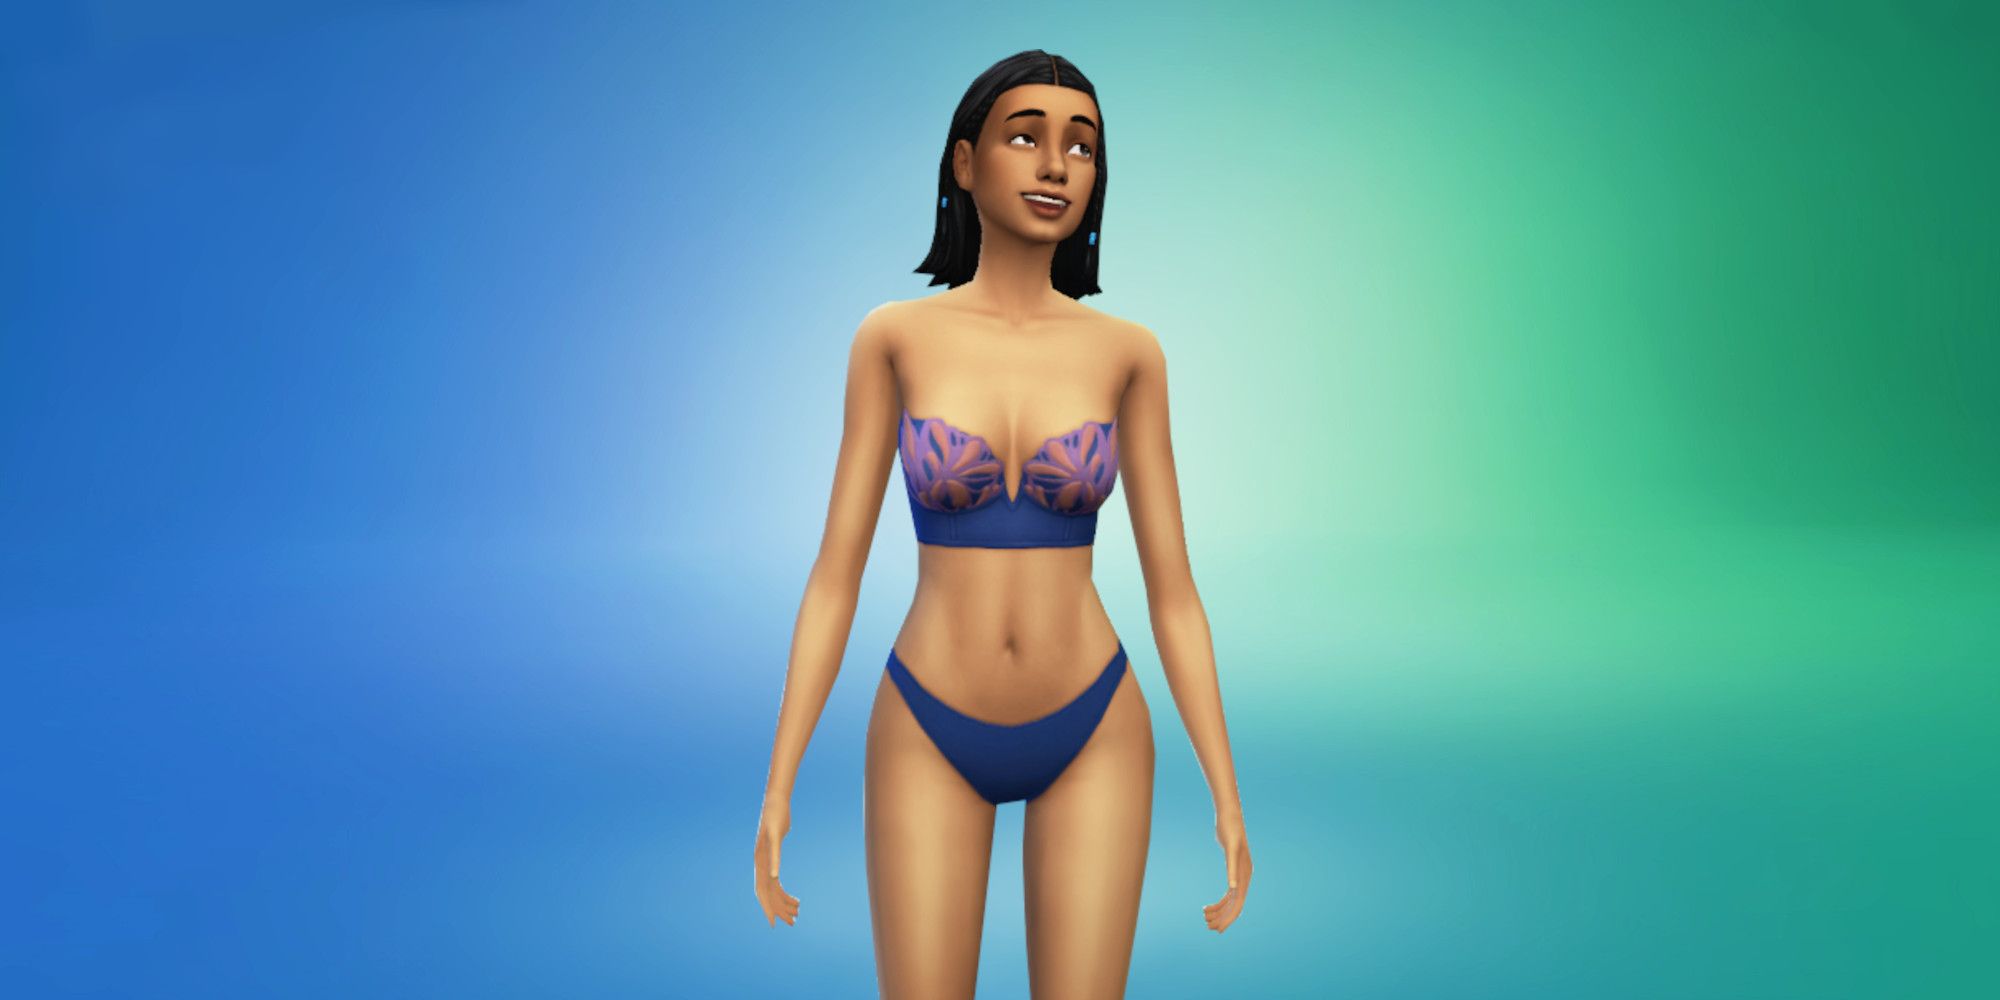 The Sims Resource - Heart Undies/Swimwear (for teen girls)